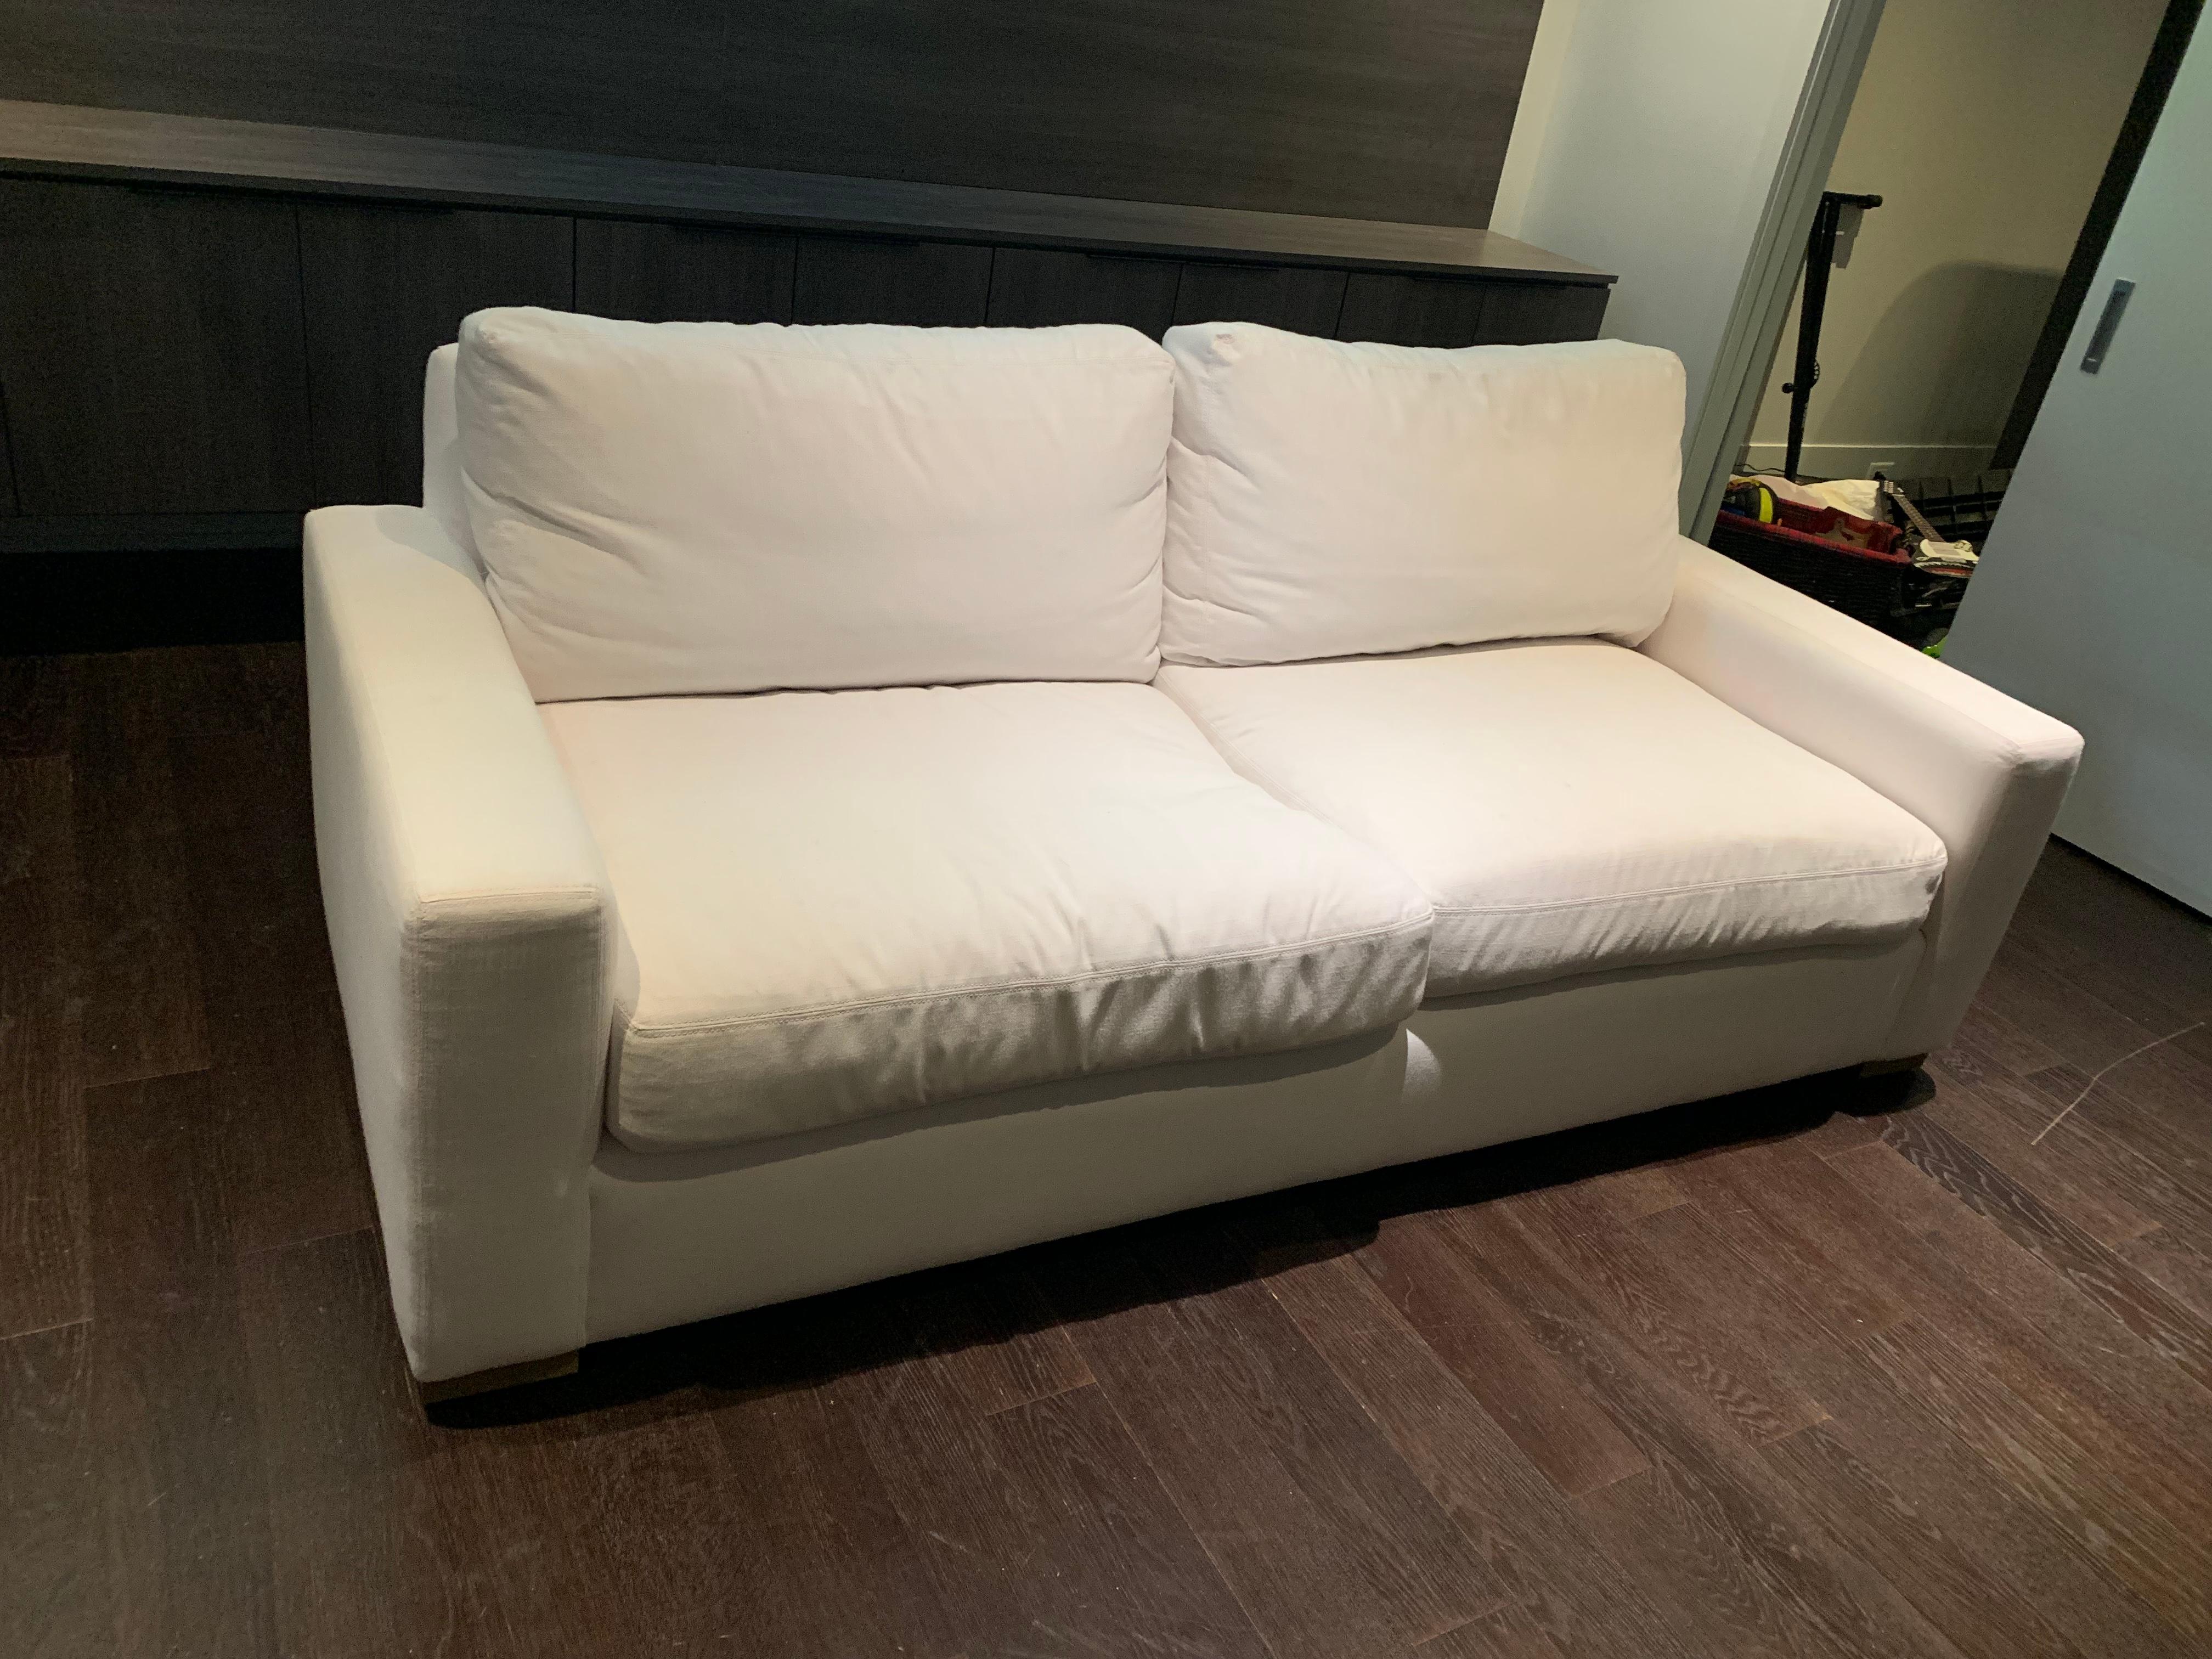 Maxwell 6' sofa in white linen slipcover

Restoration hardware Maxwell sofa in white linen slipcover
72